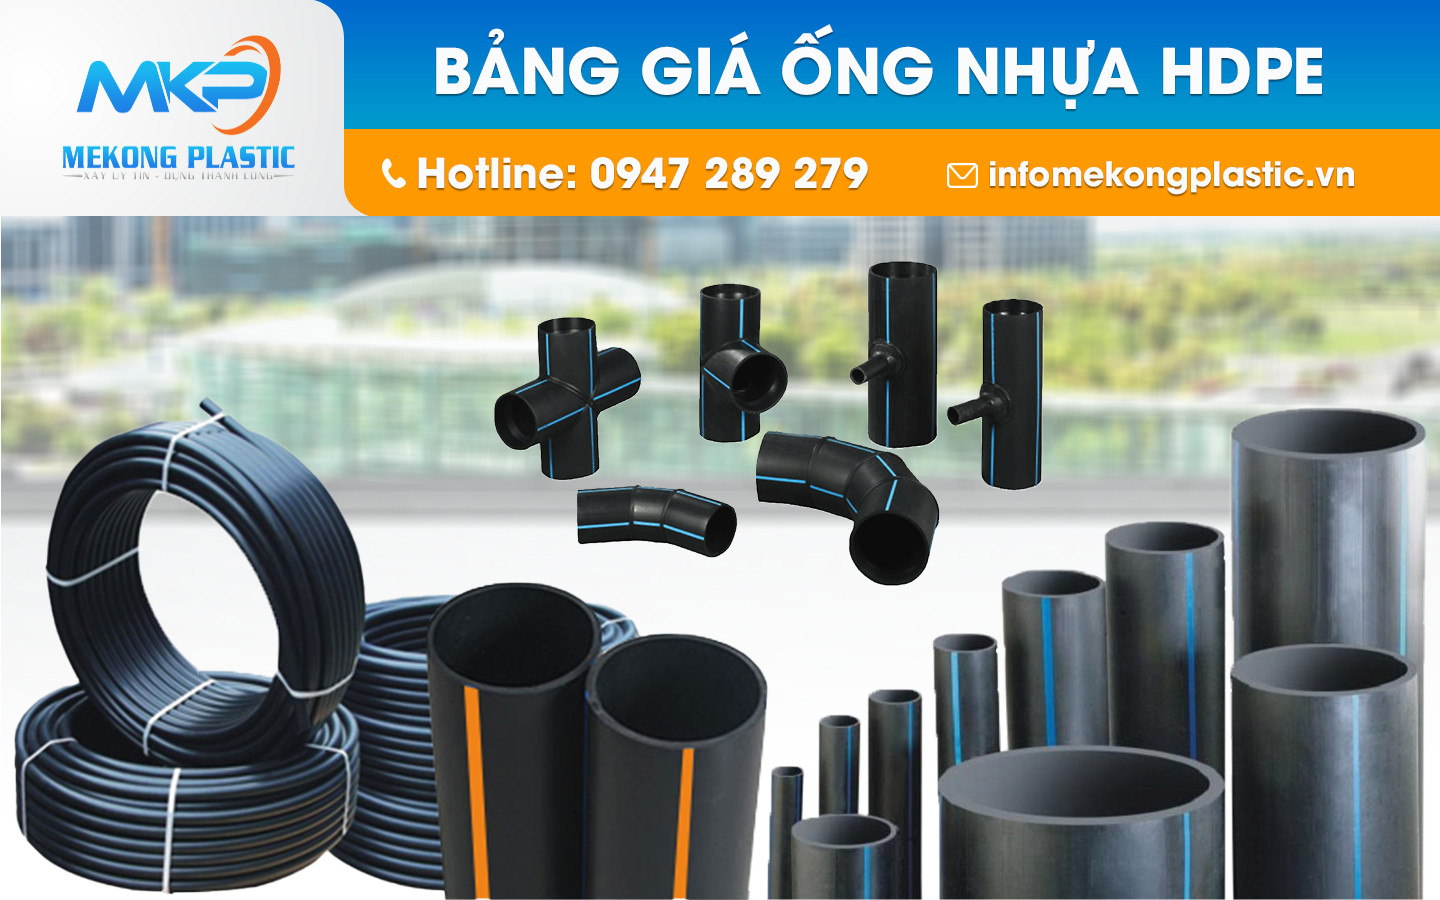 Mẹo chọn mua ống nhựa HDPE và phụ kiện HDPE